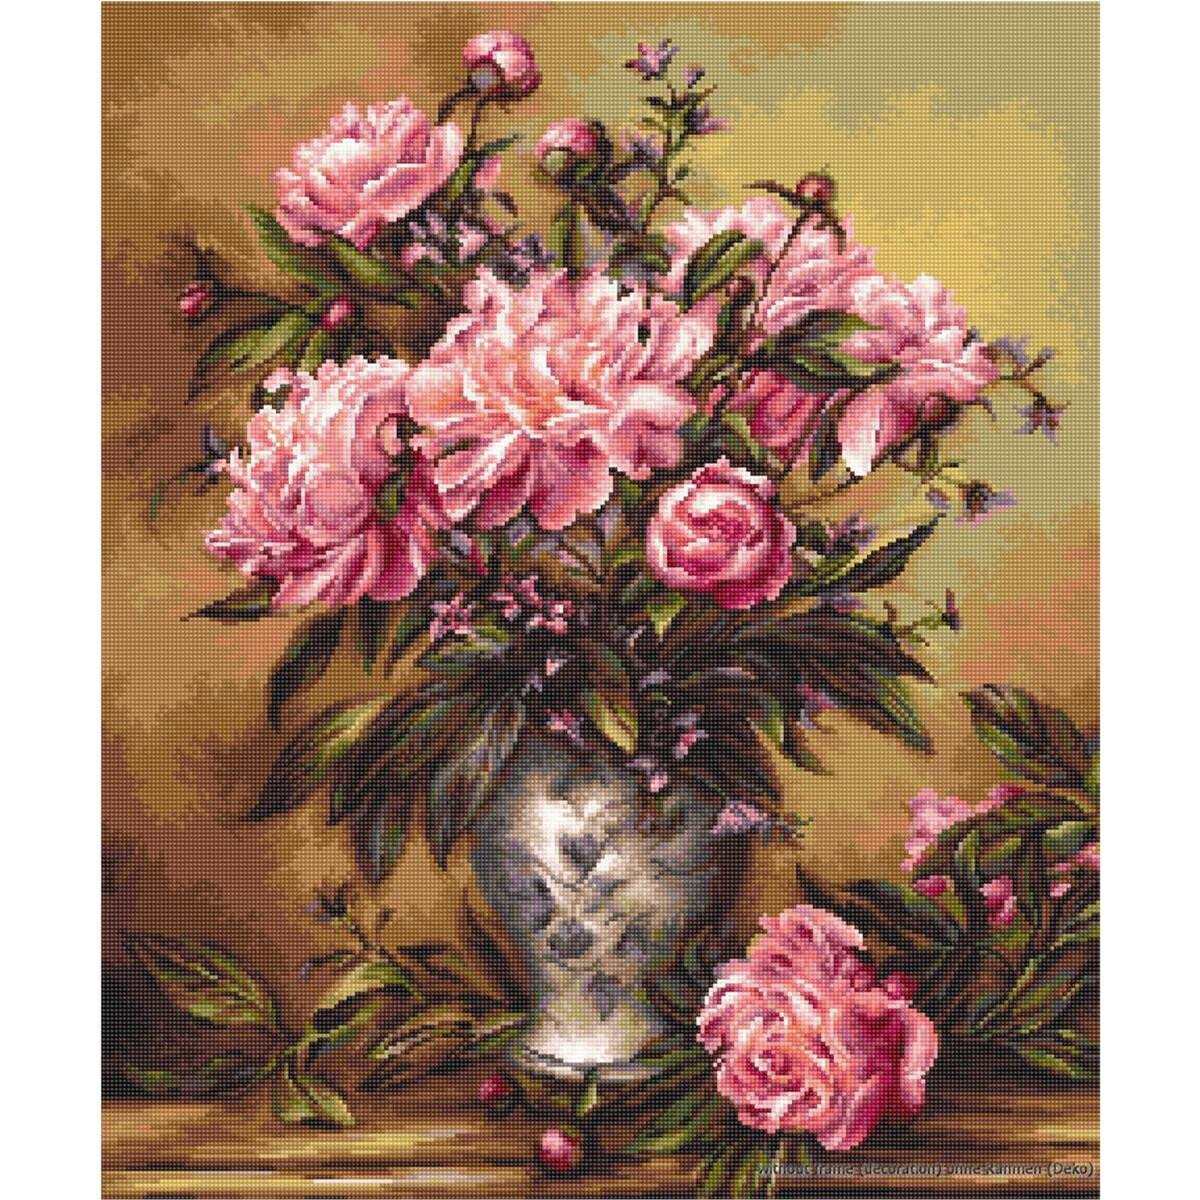 Una detallada pintura de peonías rosas y capullos...